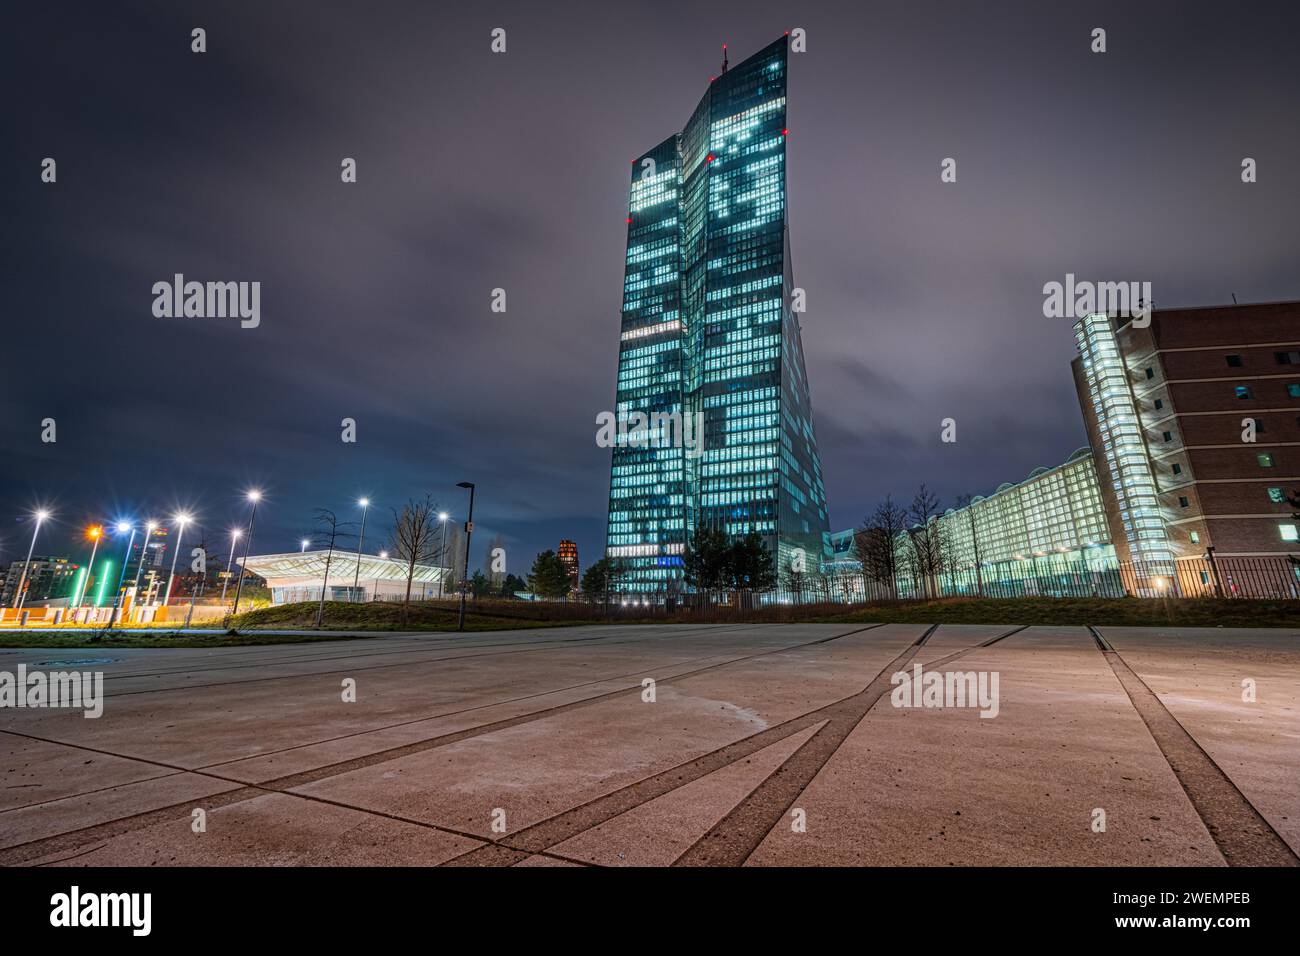 Die Lichter der Europäischen Zentralbank (EZB) leuchten am Abend, Europäische Zentralbank, Frankfurt am Main, Hessen, Deutschland Stockfoto